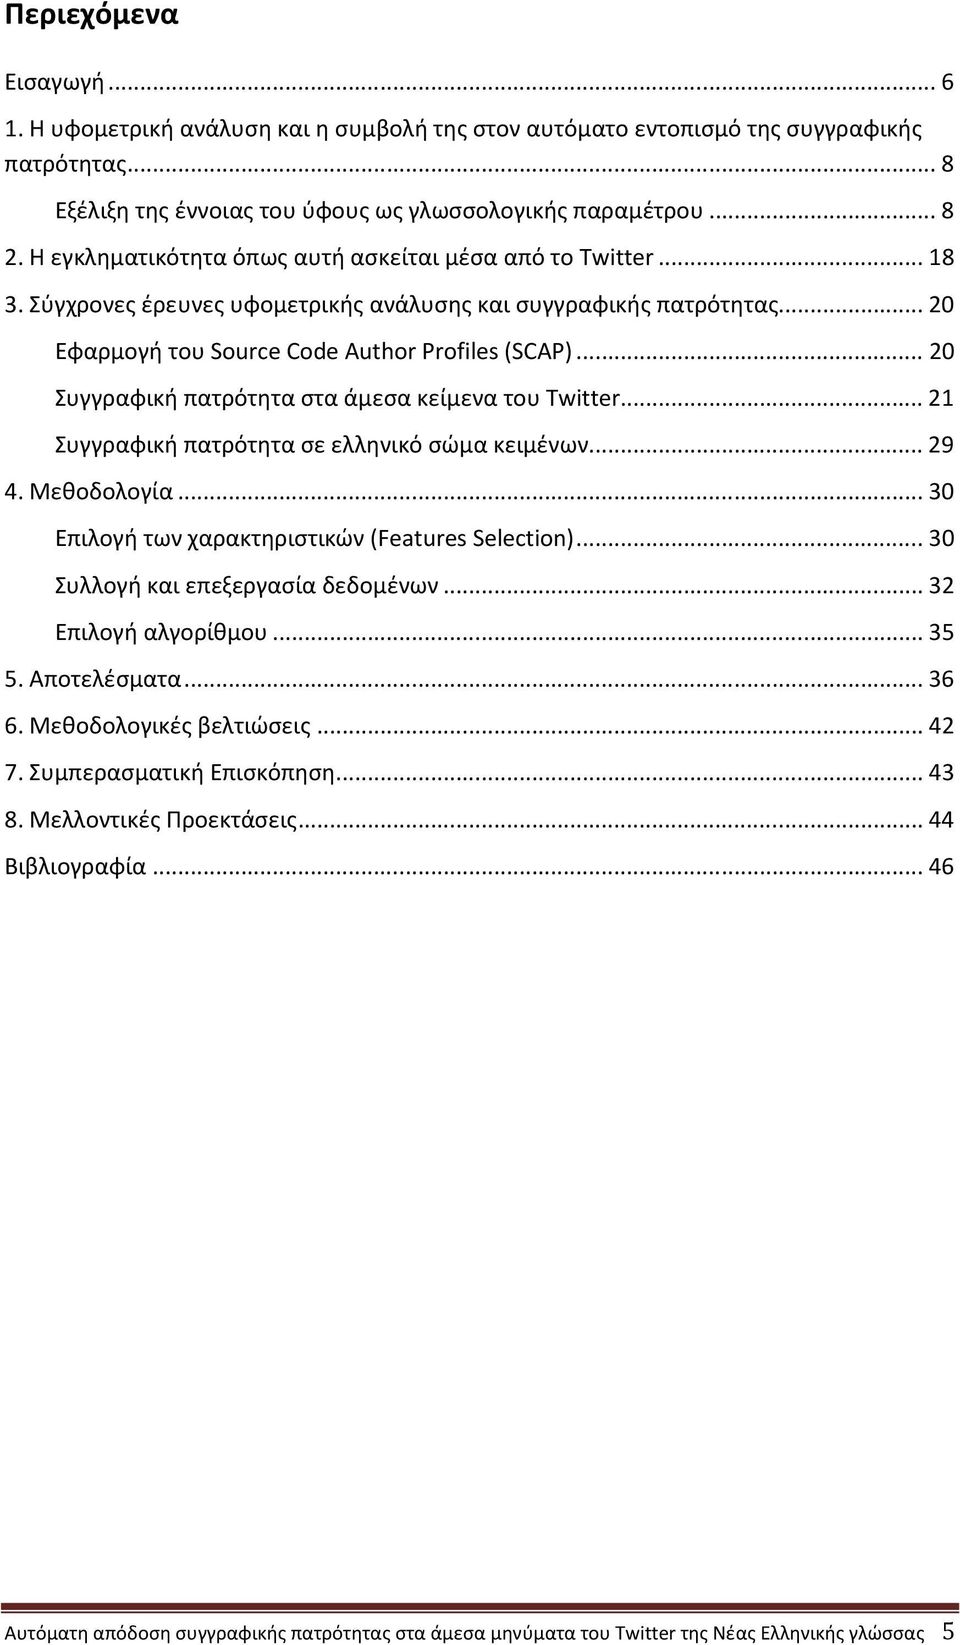 ..20 Συγγραφική πατρότητα στα άμεσα κείμενα του Twitter...21 Συγγραφική πατρότητα σε ελληνικό σώμα κειμένων...29 4. Μεθοδολογία...30 Επιλογή των χαρακτηριστικών (Features Selection).